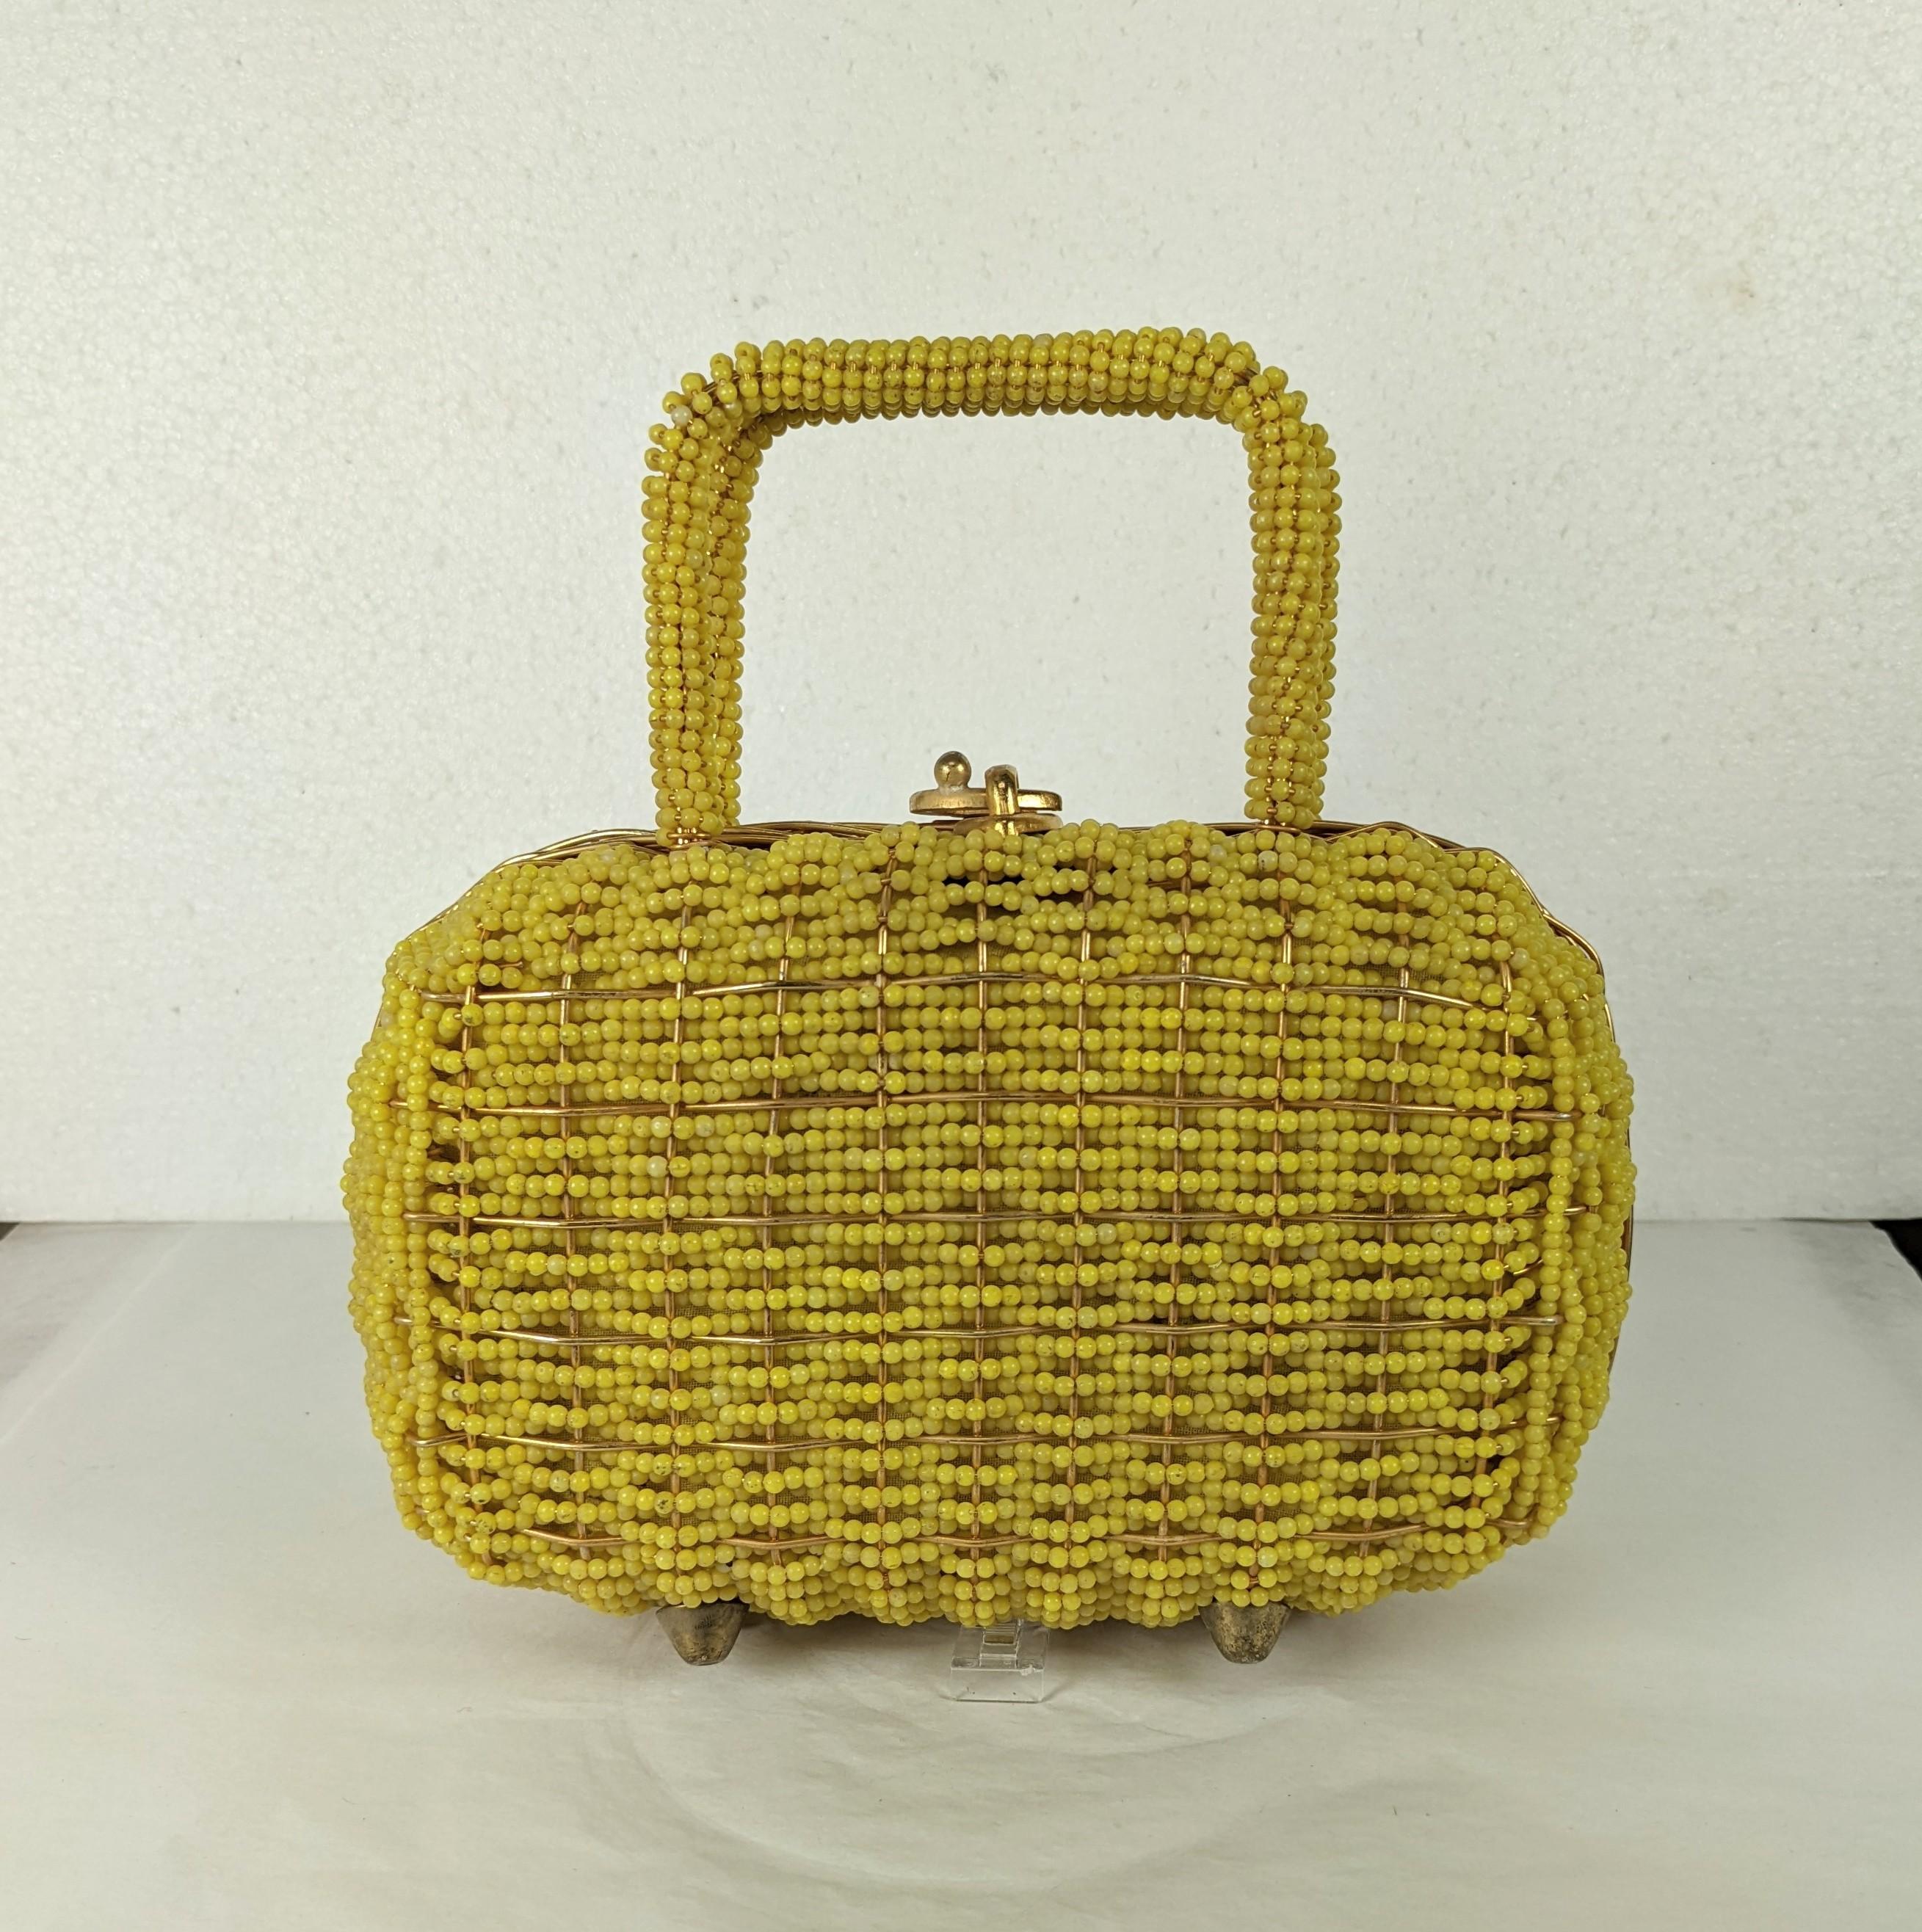 Sac à main perlé de Walborg datant des années 1960. Doublure en textile métallisé or. Le sac est entièrement perlé à la main avec des perles en plastique jaune sur un cadre rigide avec un loquet doré sur le dessus. 1960's. 7